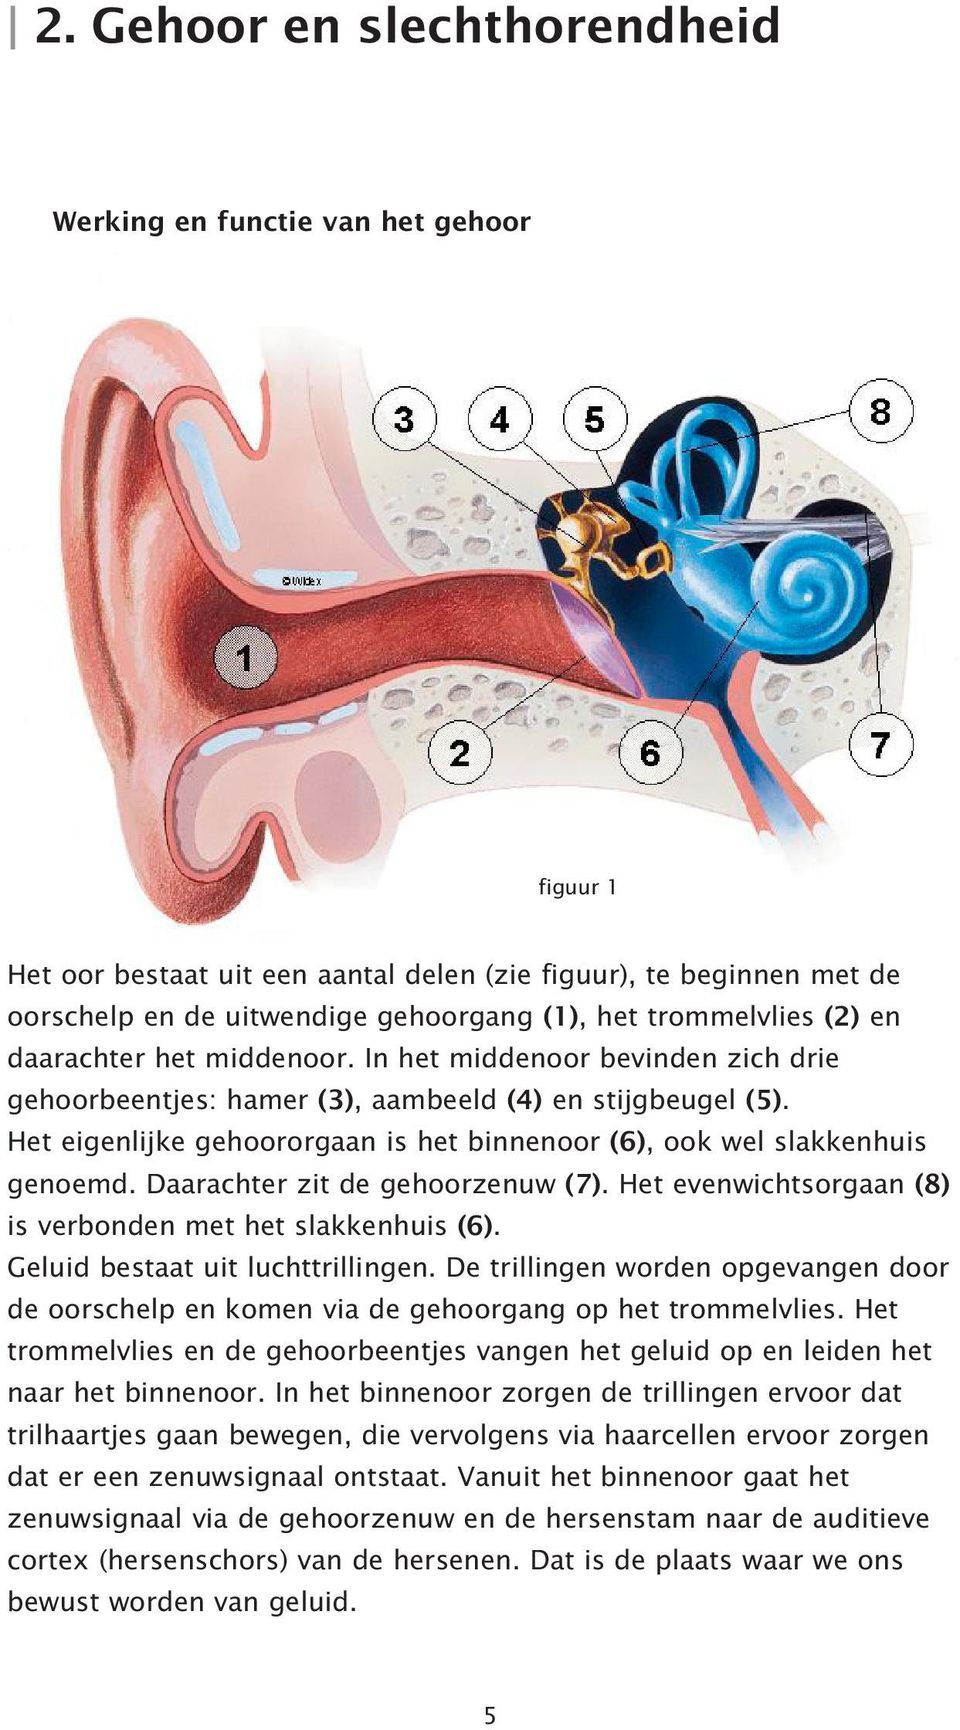 Het eigenlijke gehoororgaan is het binnenoor (6), ook wel slakkenhuis genoemd. Daarachter zit de gehoorzenuw (7). Het evenwichtsorgaan (8) is verbonden met het slakkenhuis (6).